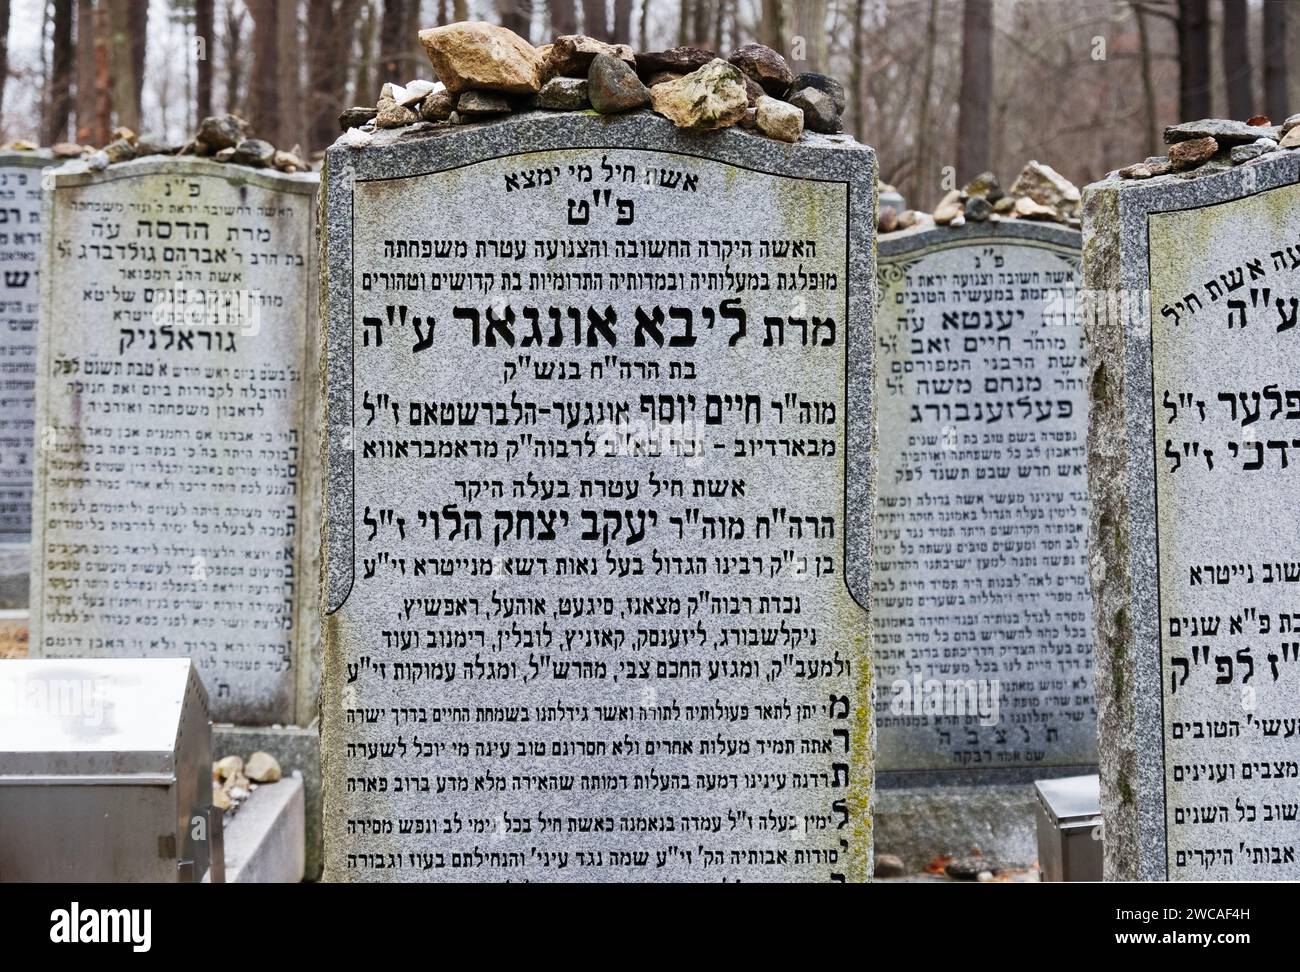 Ein Grabstein auf dem Kiryas Nitra Friedhof in Westchester New York. Wie es üblich ist, haben die Besucher Steine als respektvolles Denkmal darauf gesetzt. Stockfoto